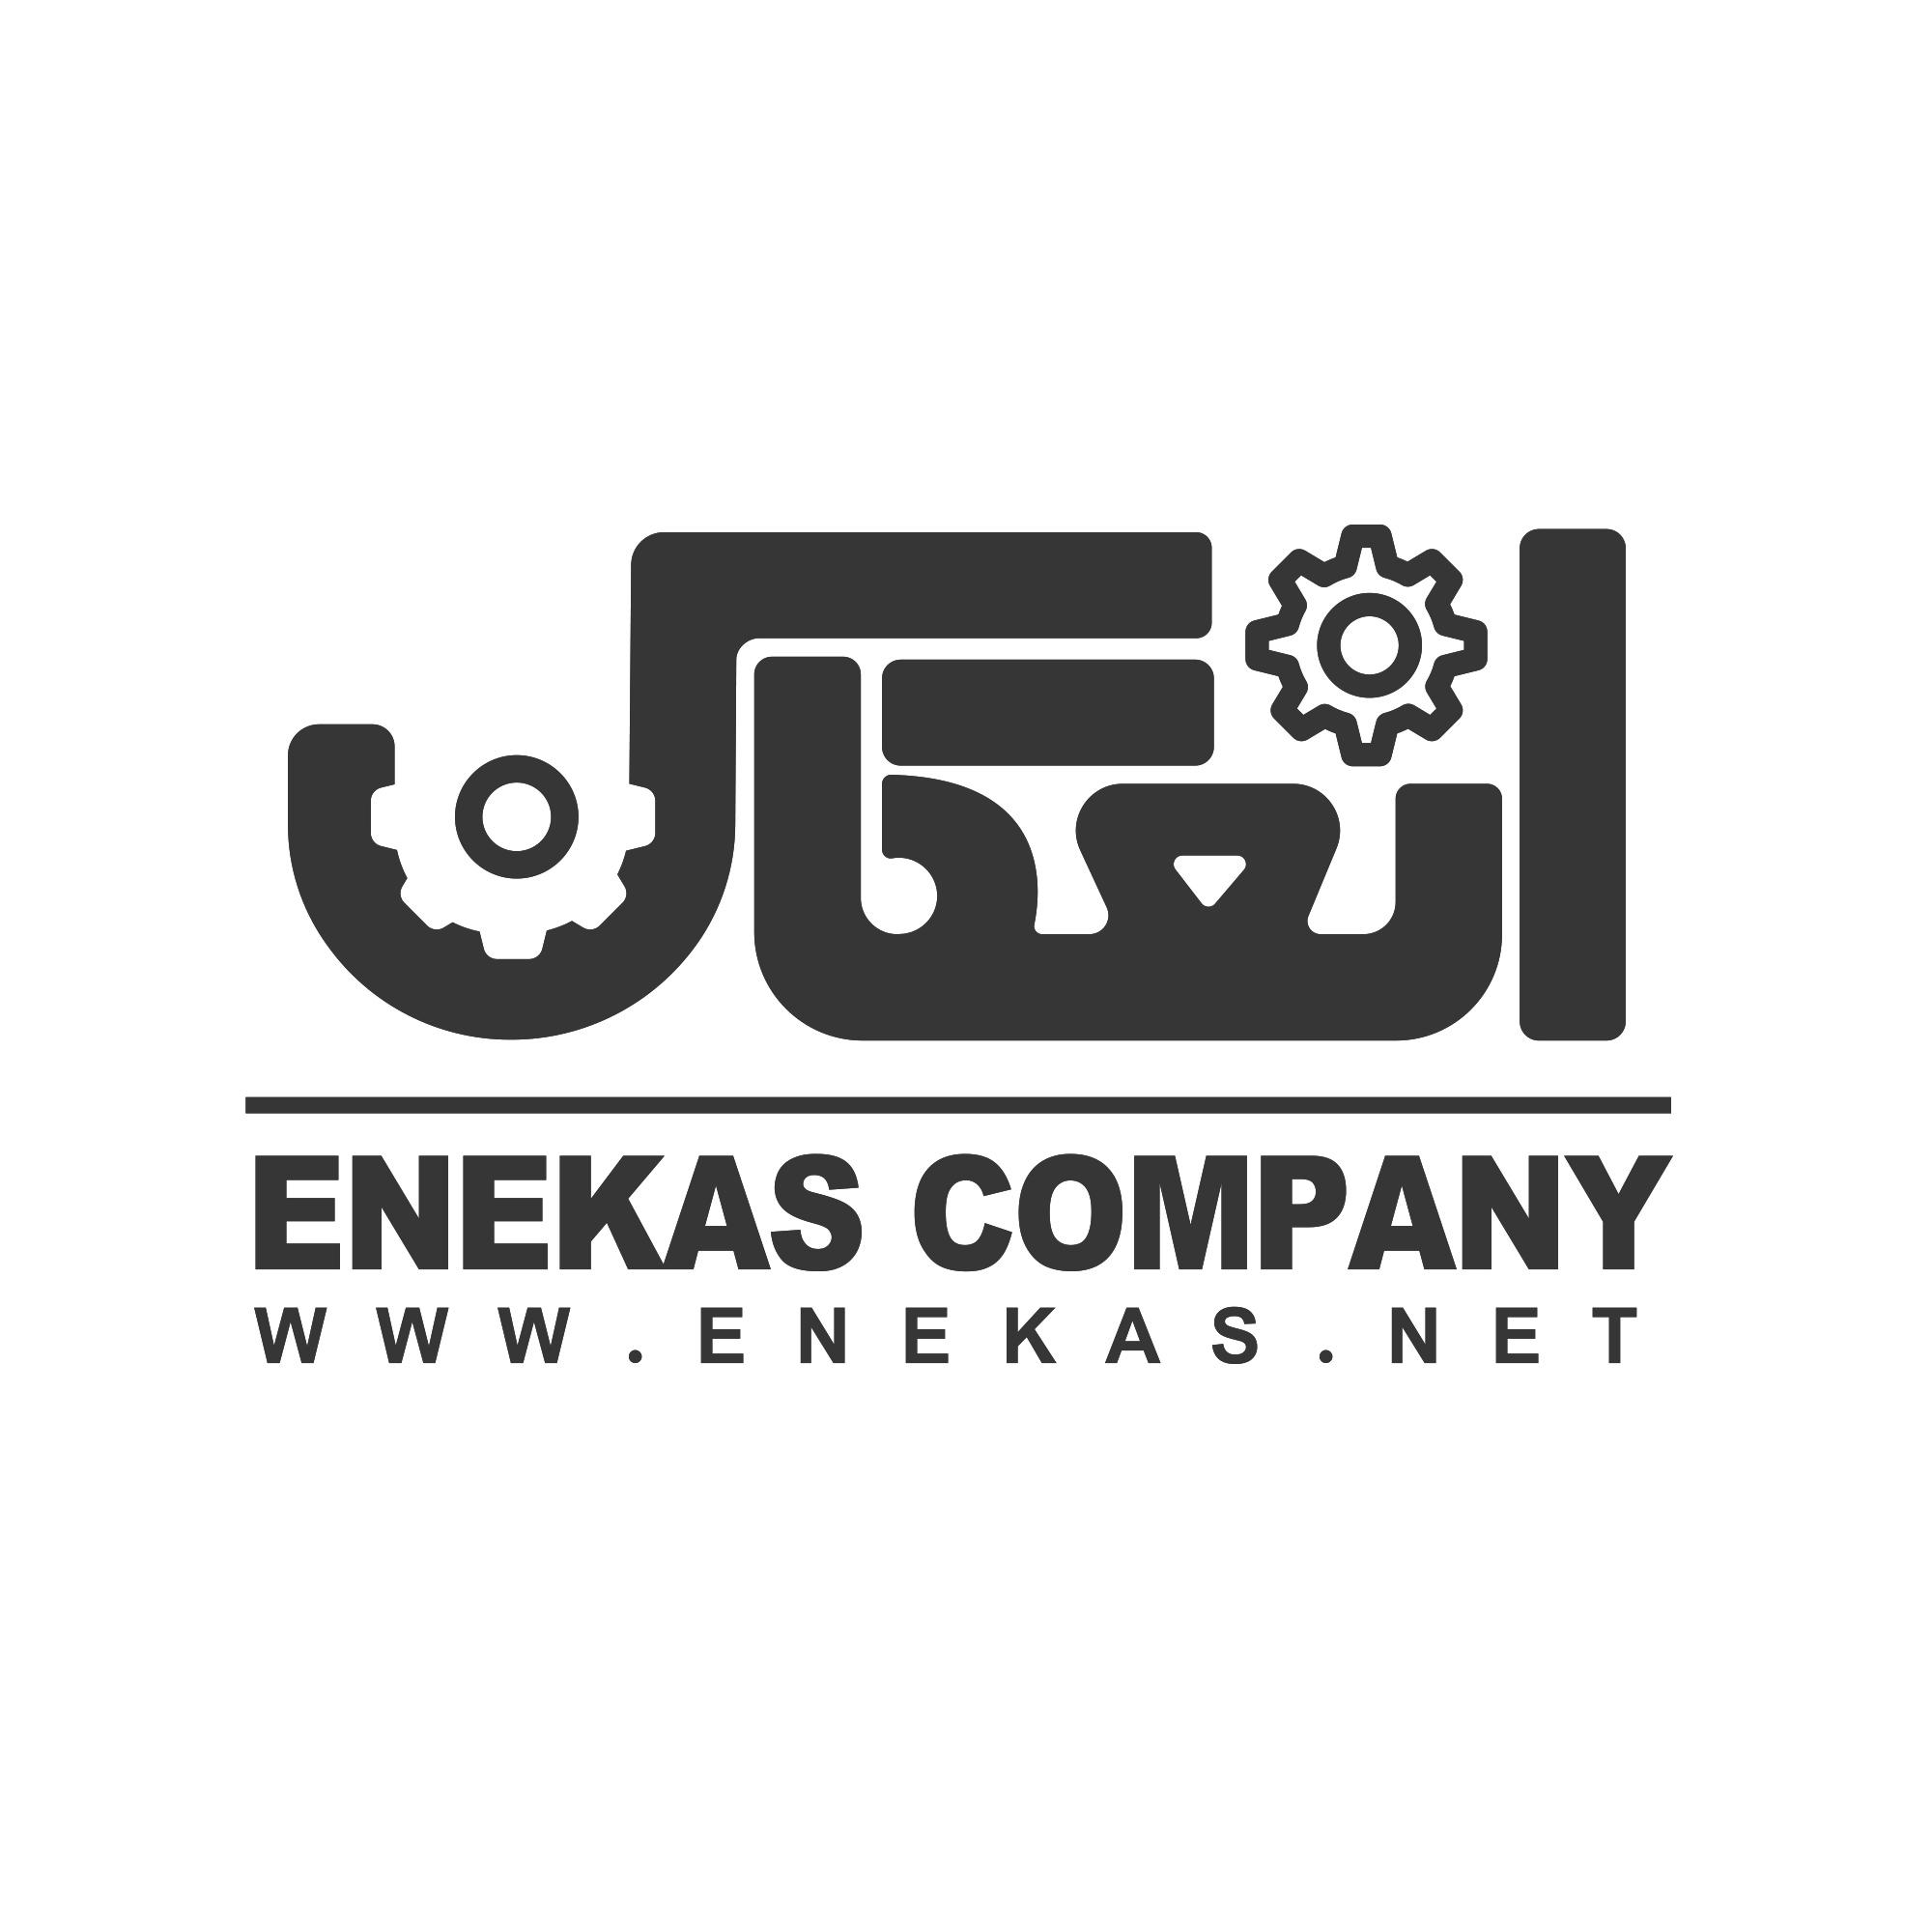 (c) Enekas.net